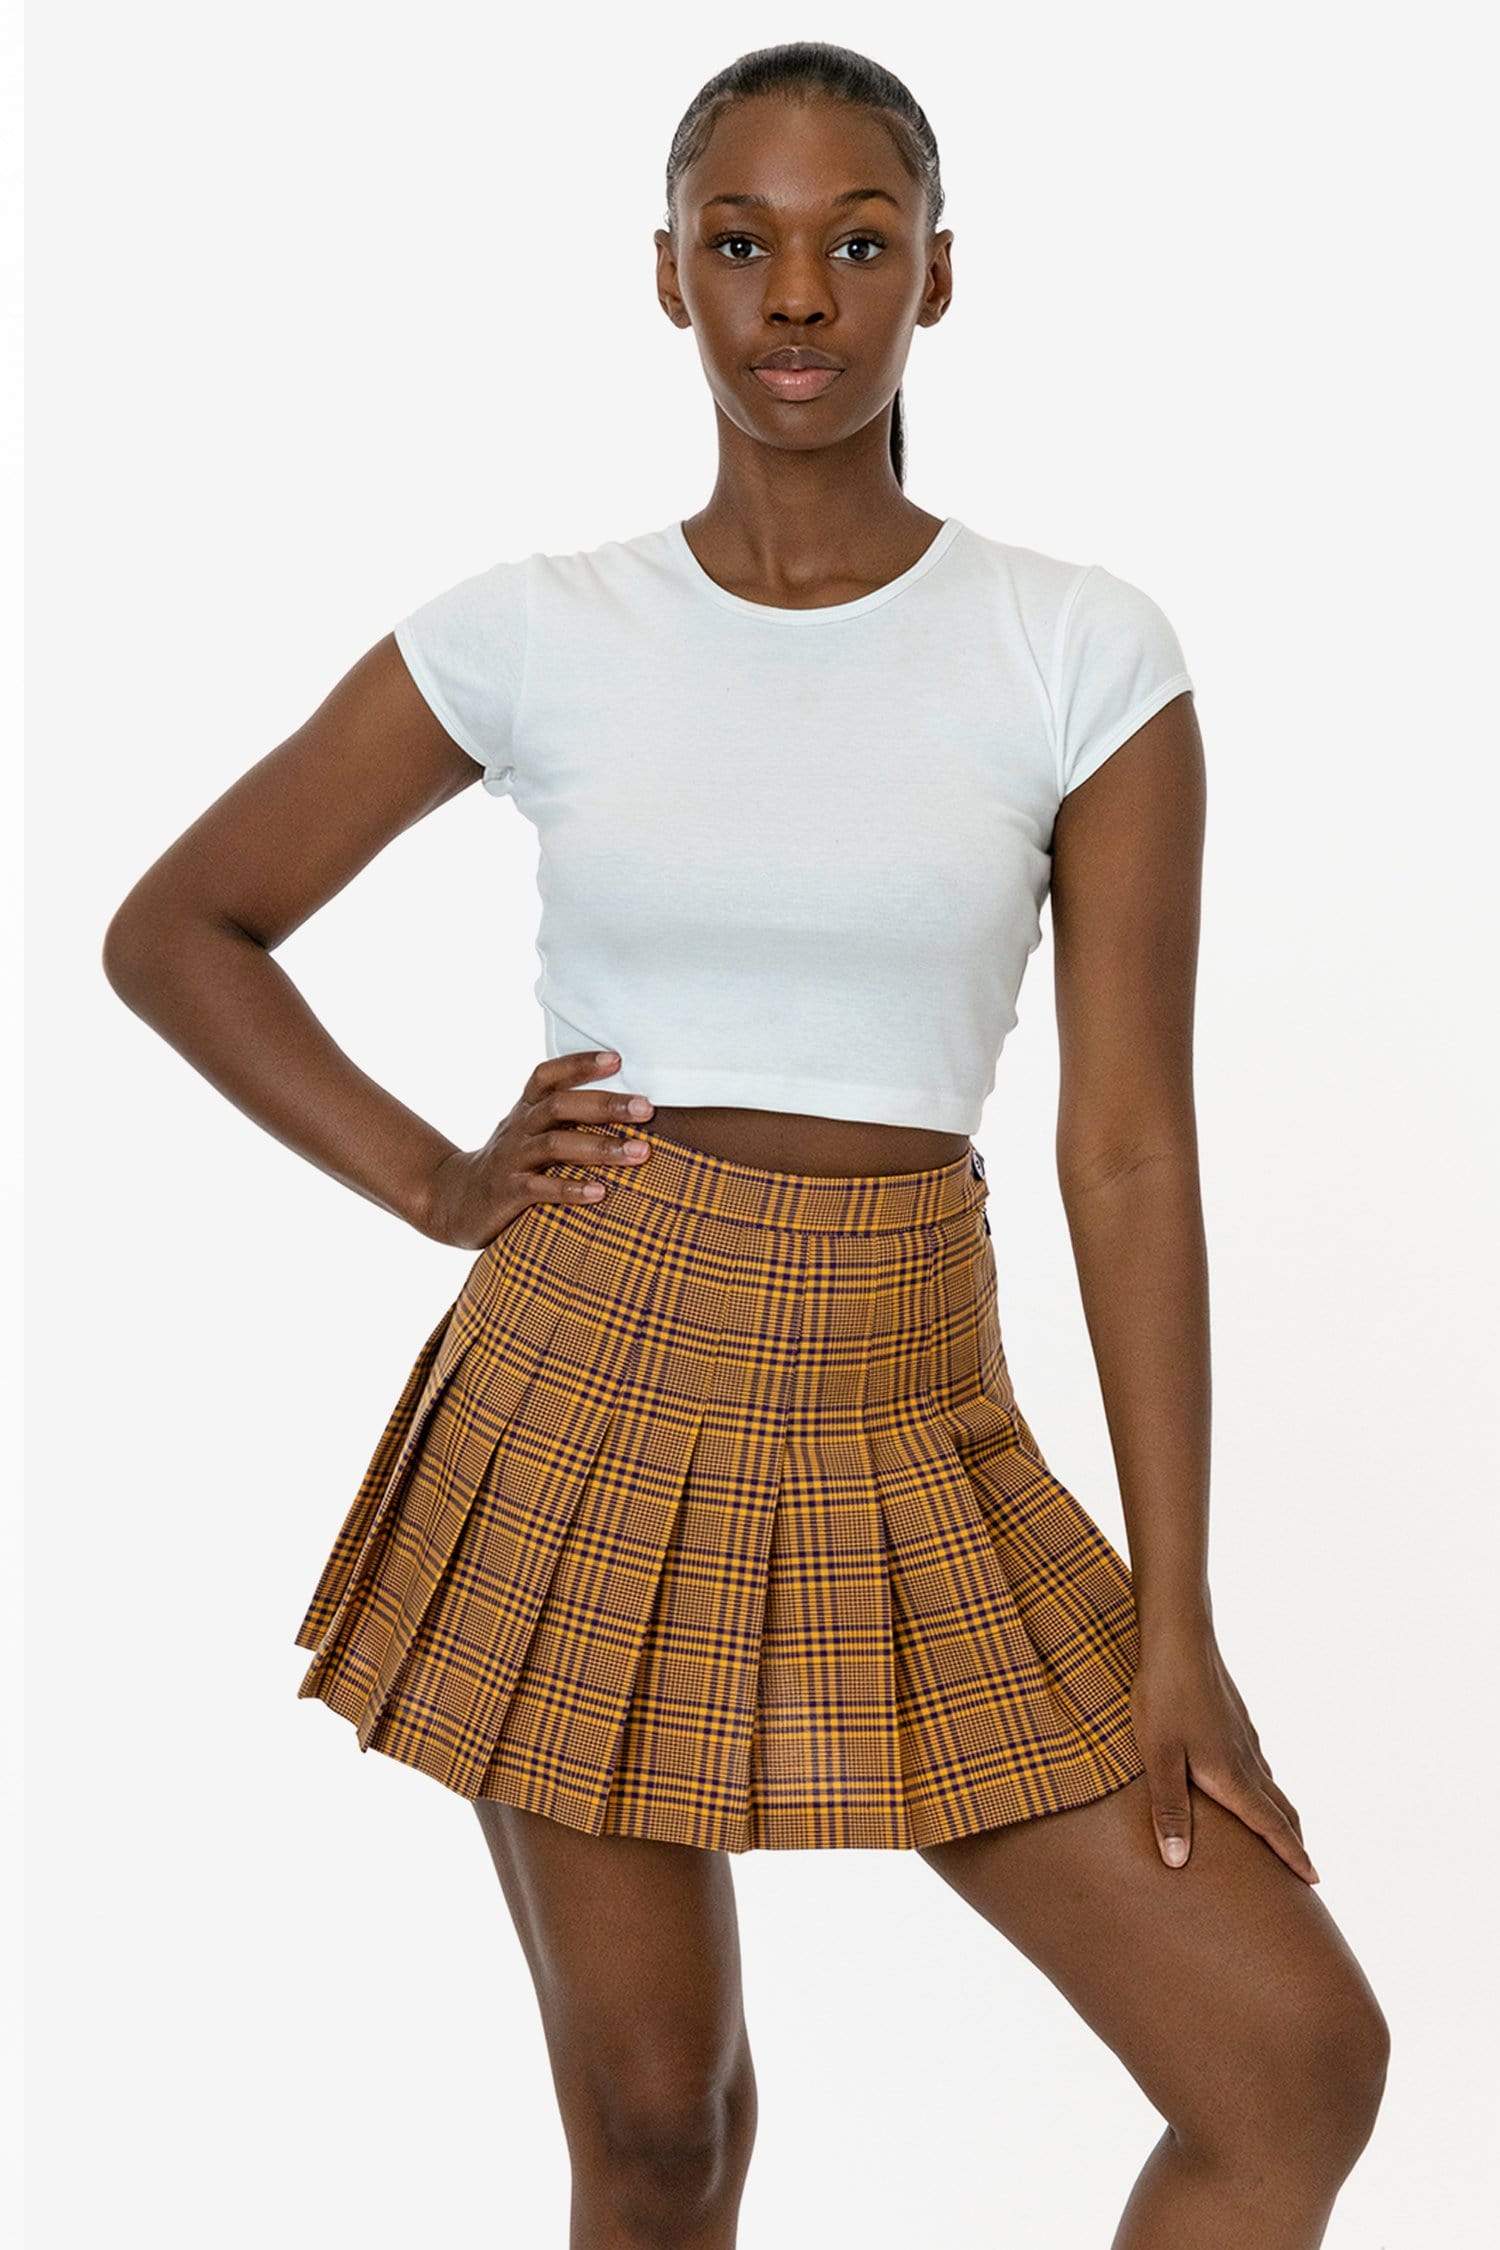 los angeles apparel Plaid Tennis Skirt